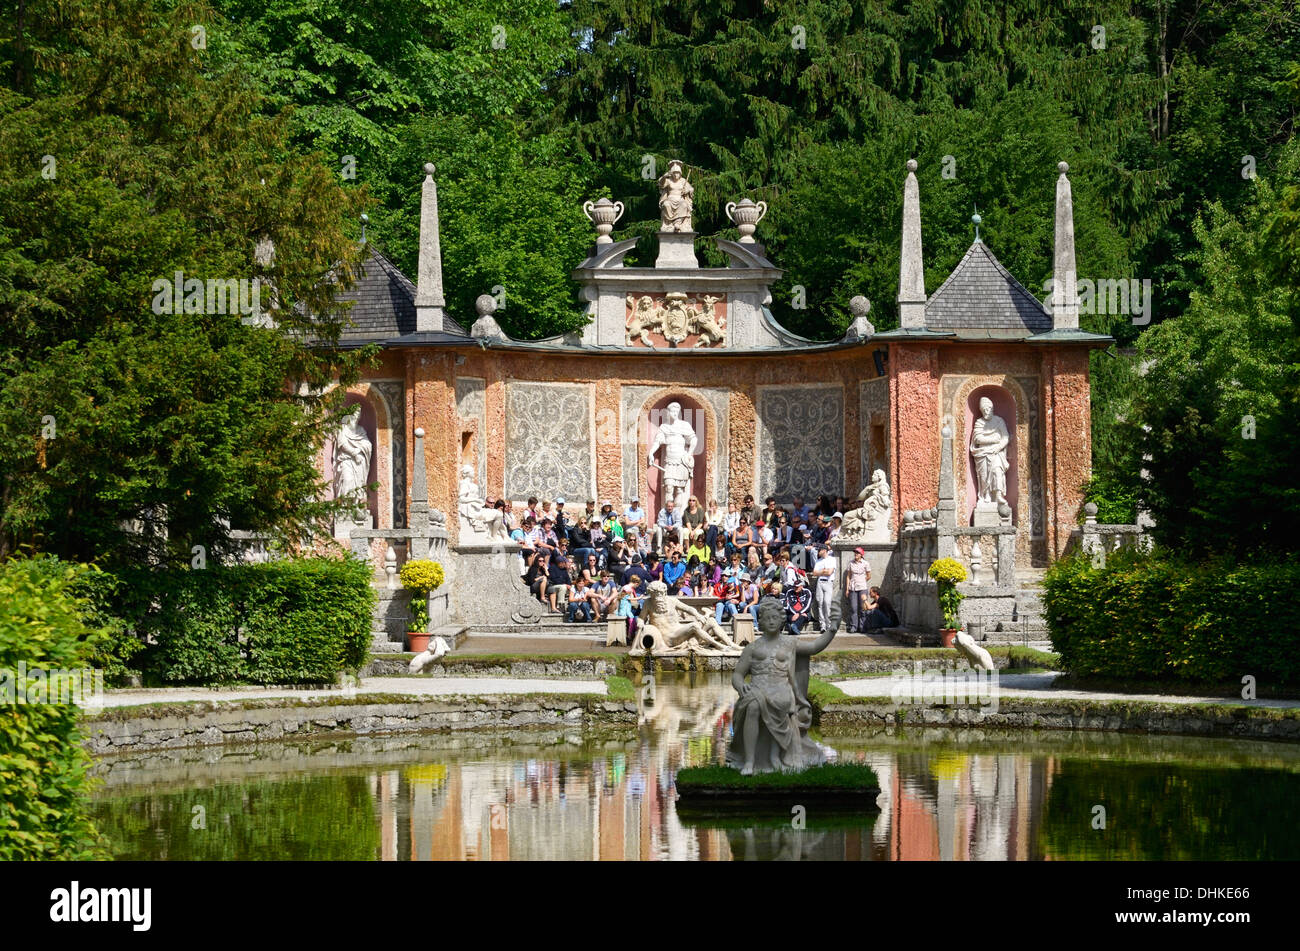 Theatre et de l'eau dans les jardins du Palais Hellbrunn, Salzbourg, Autriche Banque D'Images